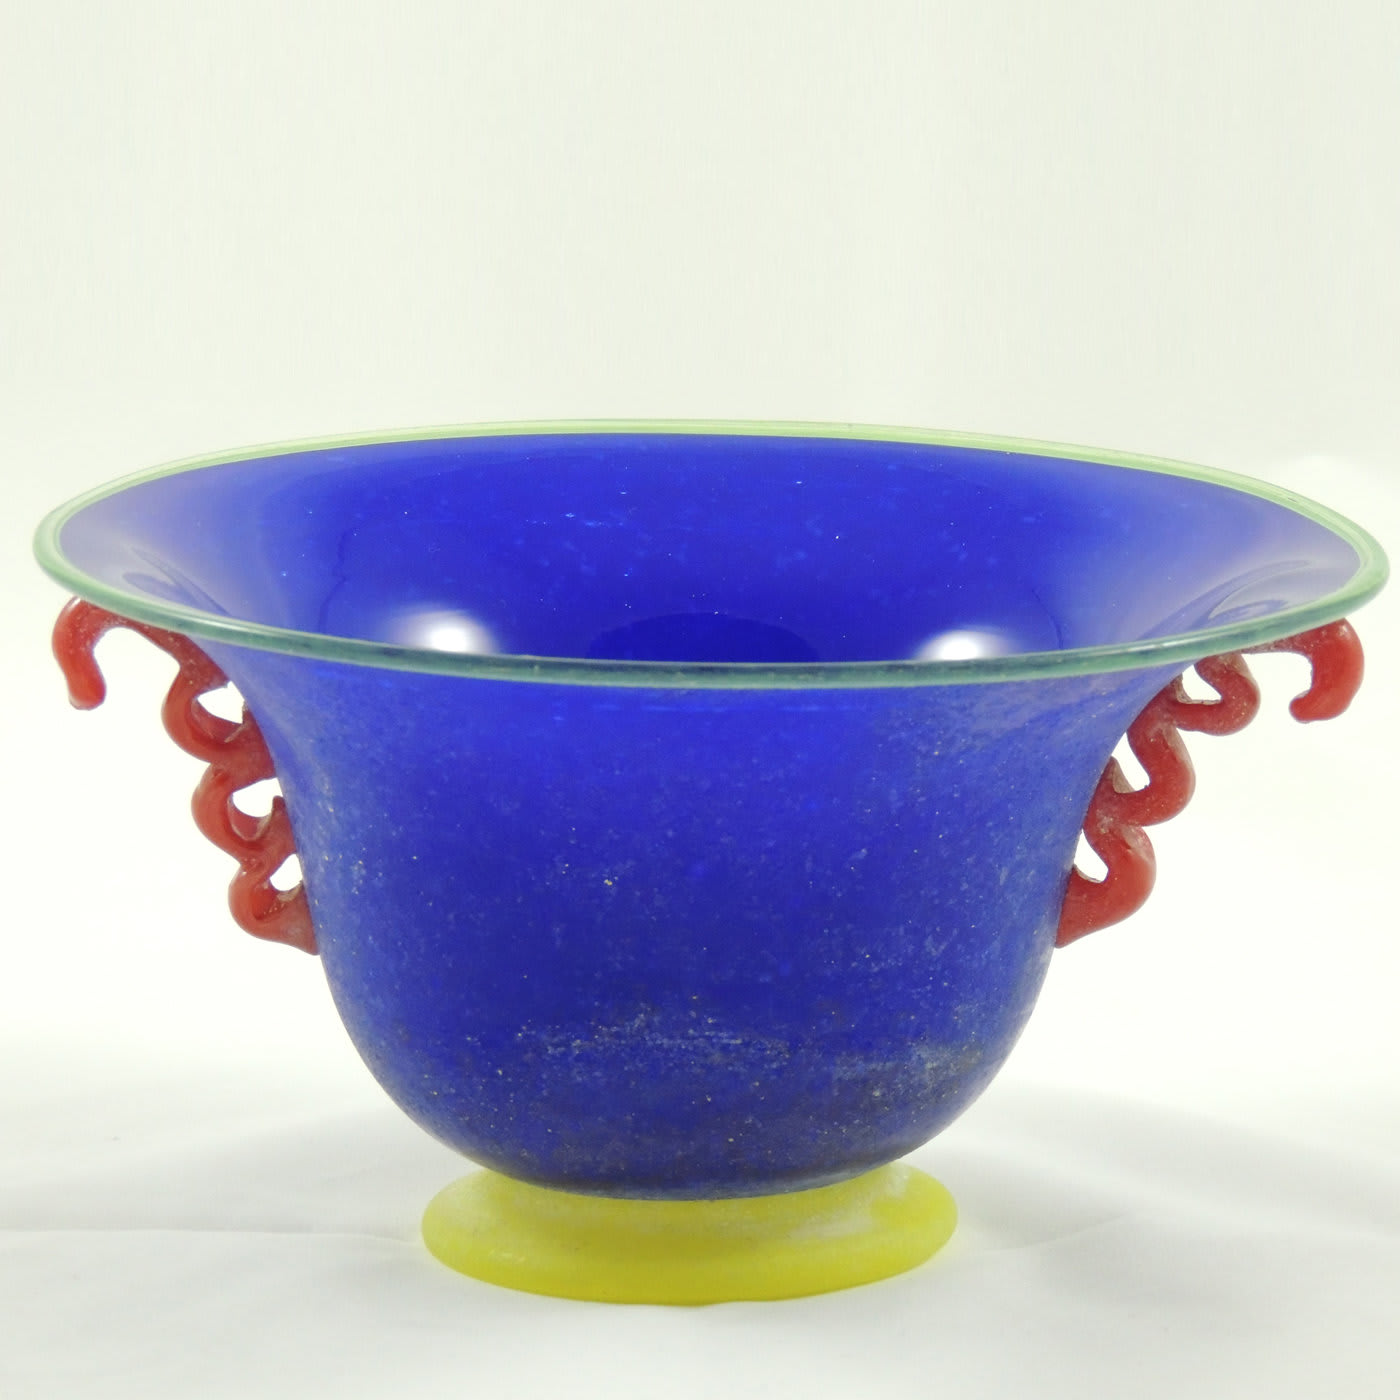 Scavo Multicolored Blue Bowl - Gambaro e Tagliapietra